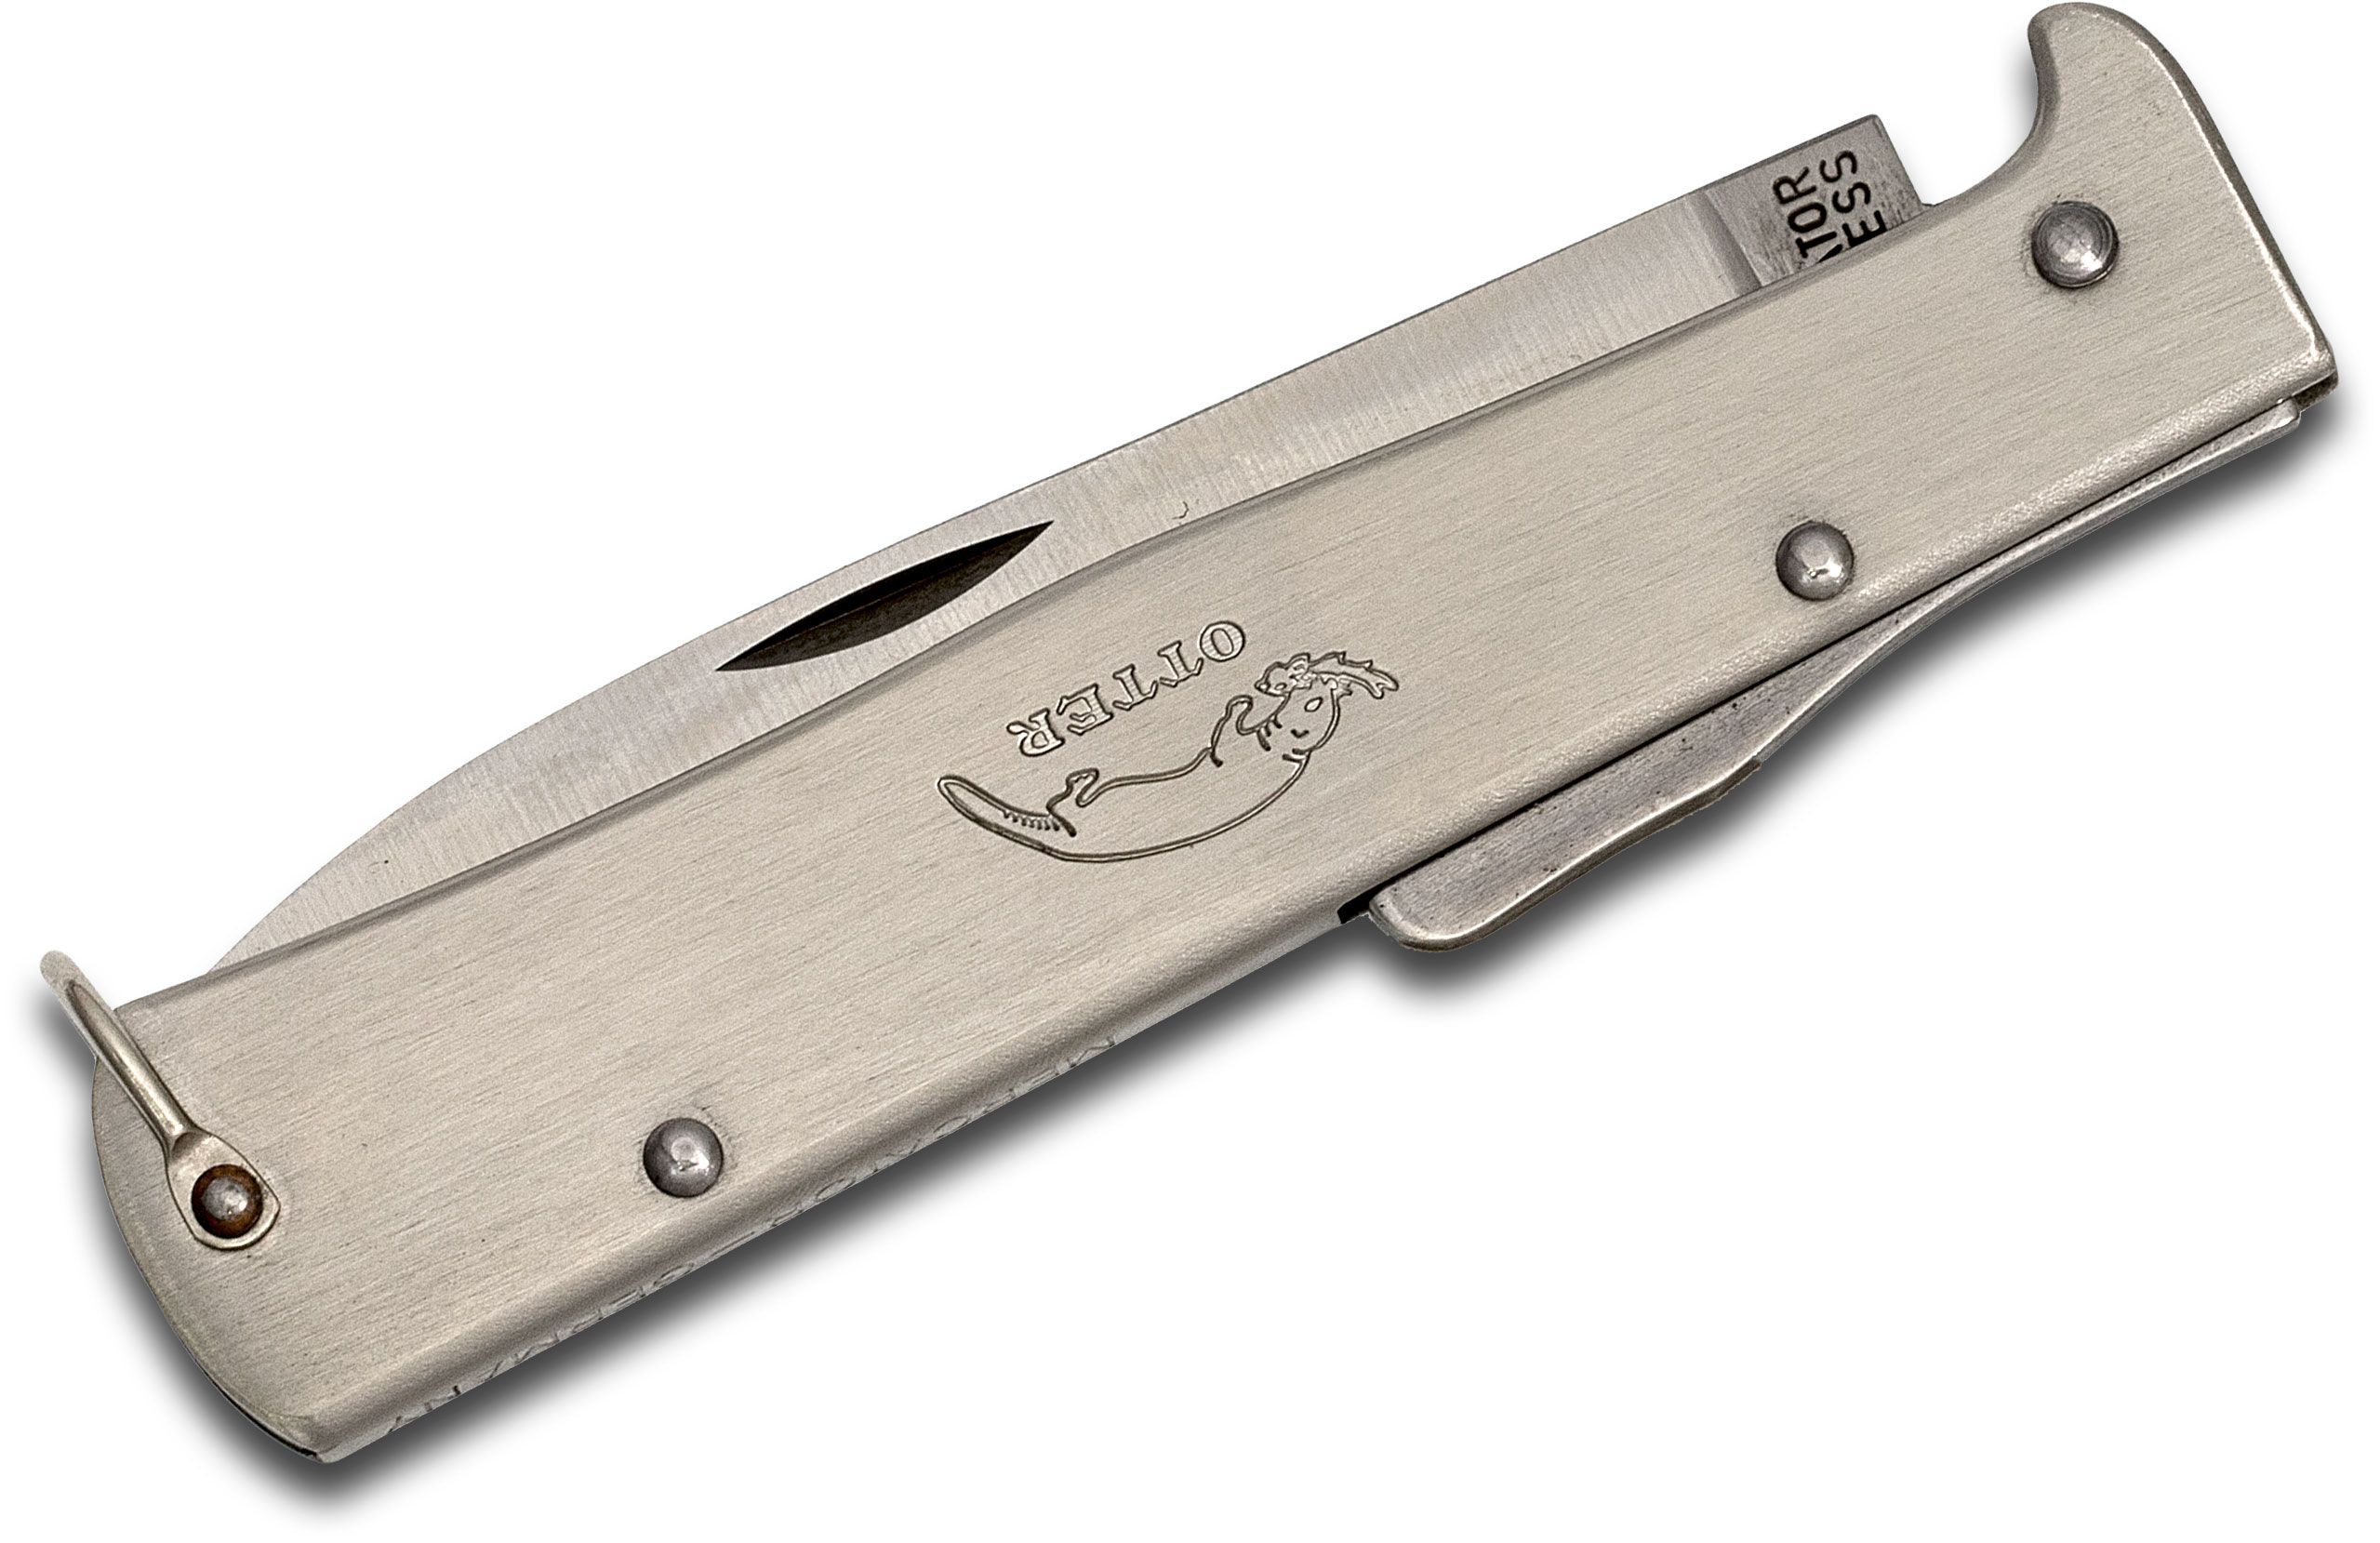 Otter Mercator Solingen K55 Lockback Folding Knife 3.5 Plain Stainless  Steel Blade and Handles with Pocket Clip - KnifeCenter - K10836R